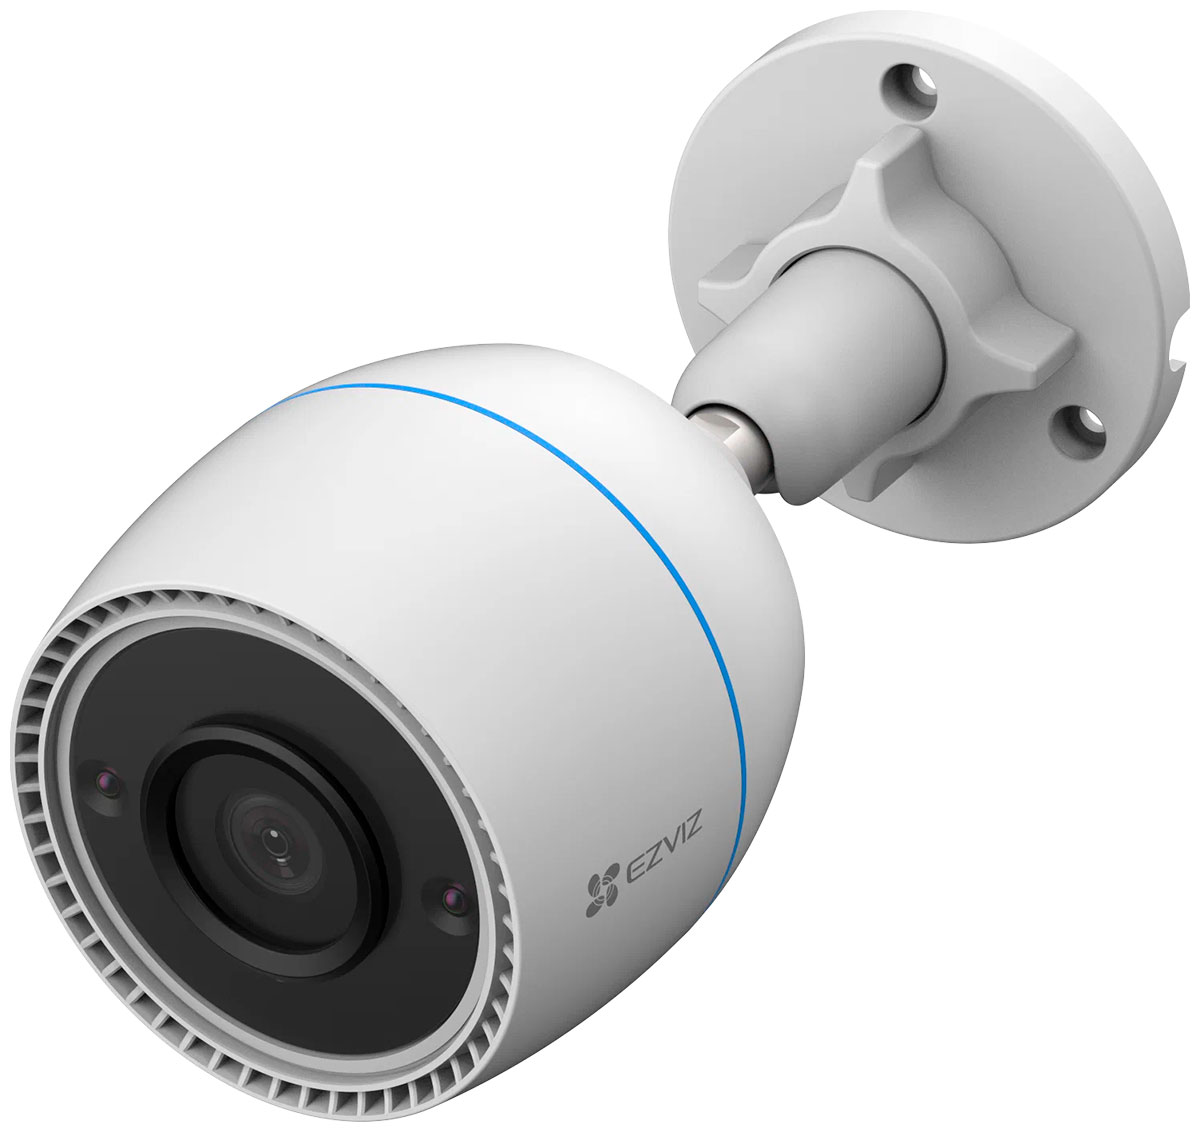 Камера Ezviz C3TN (1080P 2.8mm) камера видеонаблюдения 5 мп аналоговая уличная водонепроницаемая цветная ahd цилиндрическая камера наблюдения с ночным видением bnc xmeye h 265